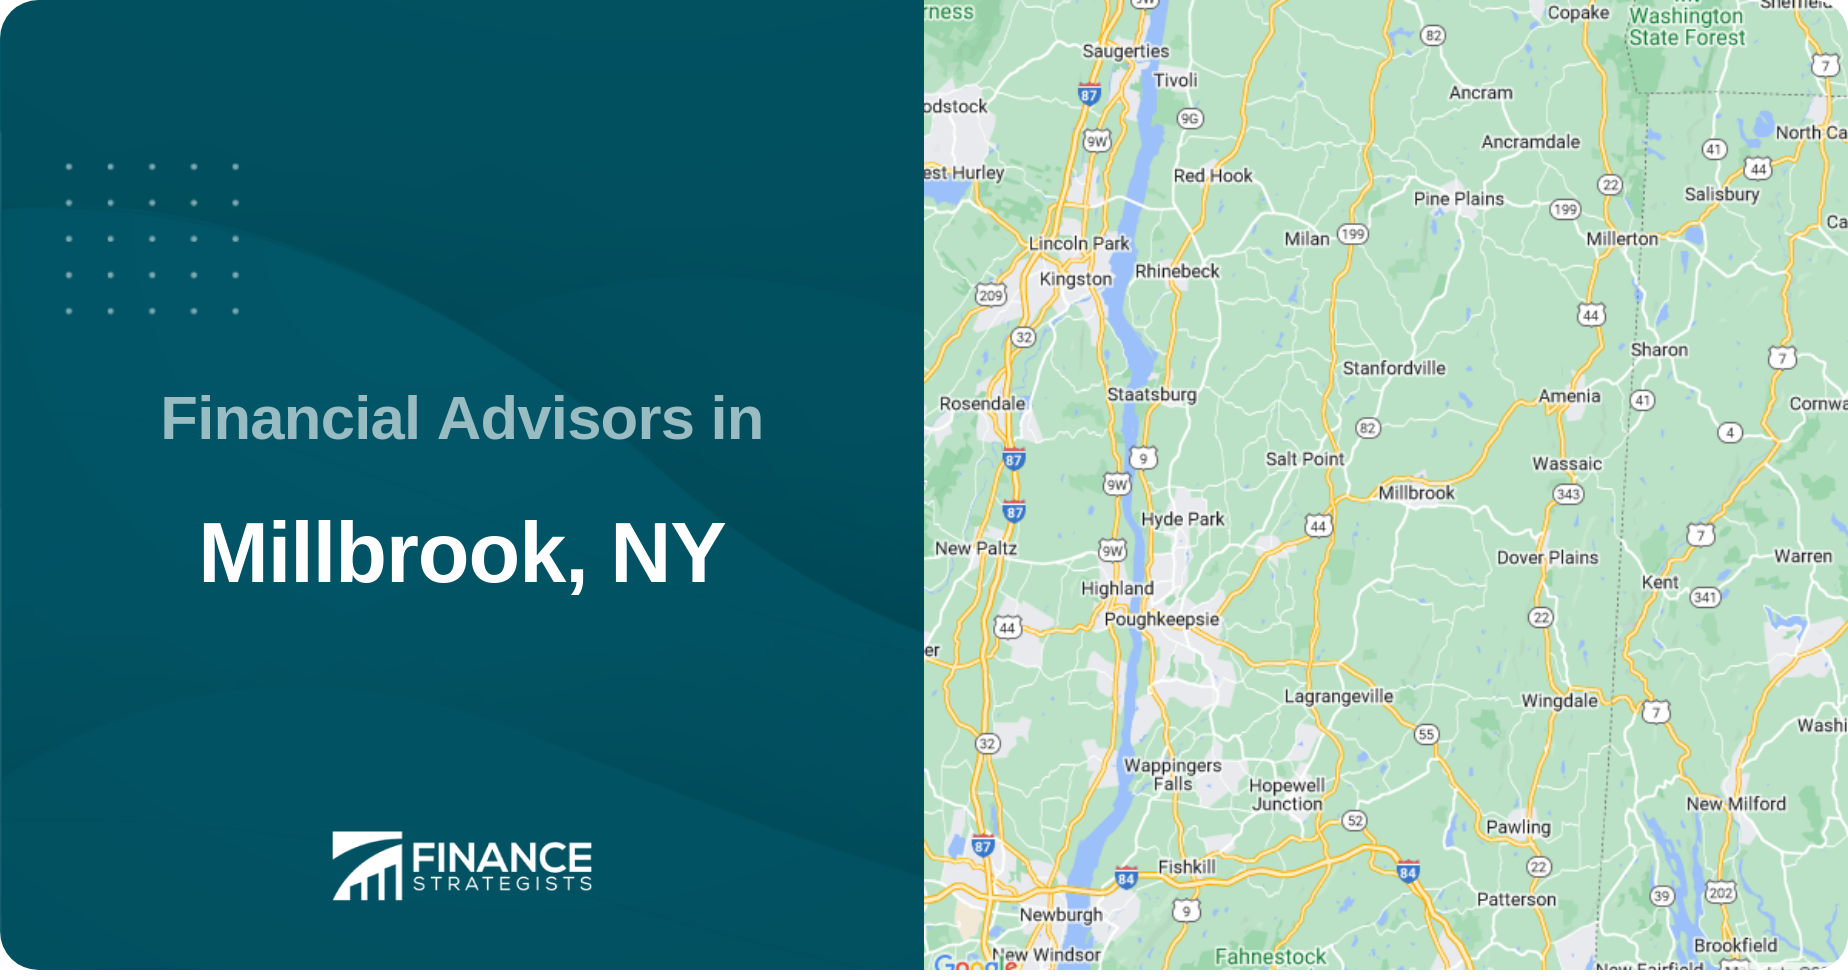 Financial Advisors in Millbrook, NY